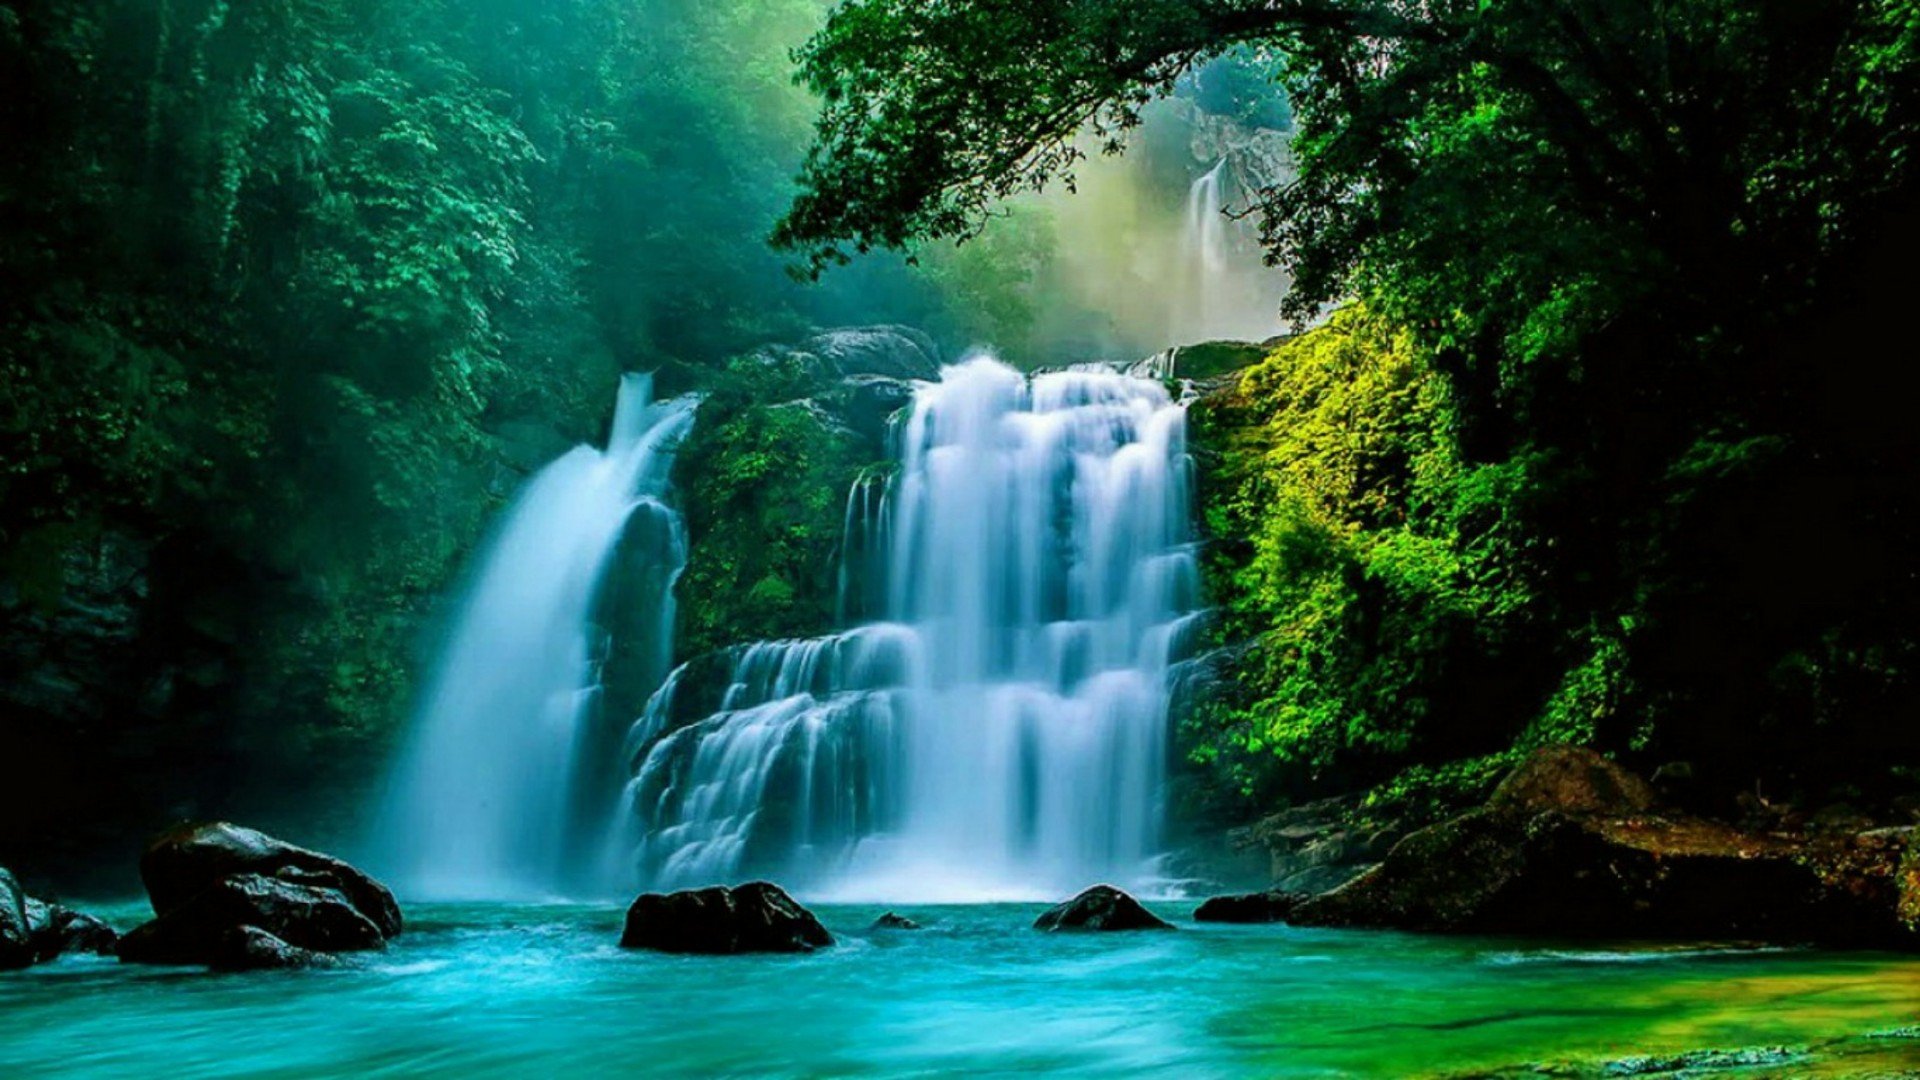 Обои красивые водопады. Водопад Бигар Румыния. Манзара водопад. Пейзаж водопад. Водопады красивые и живые.